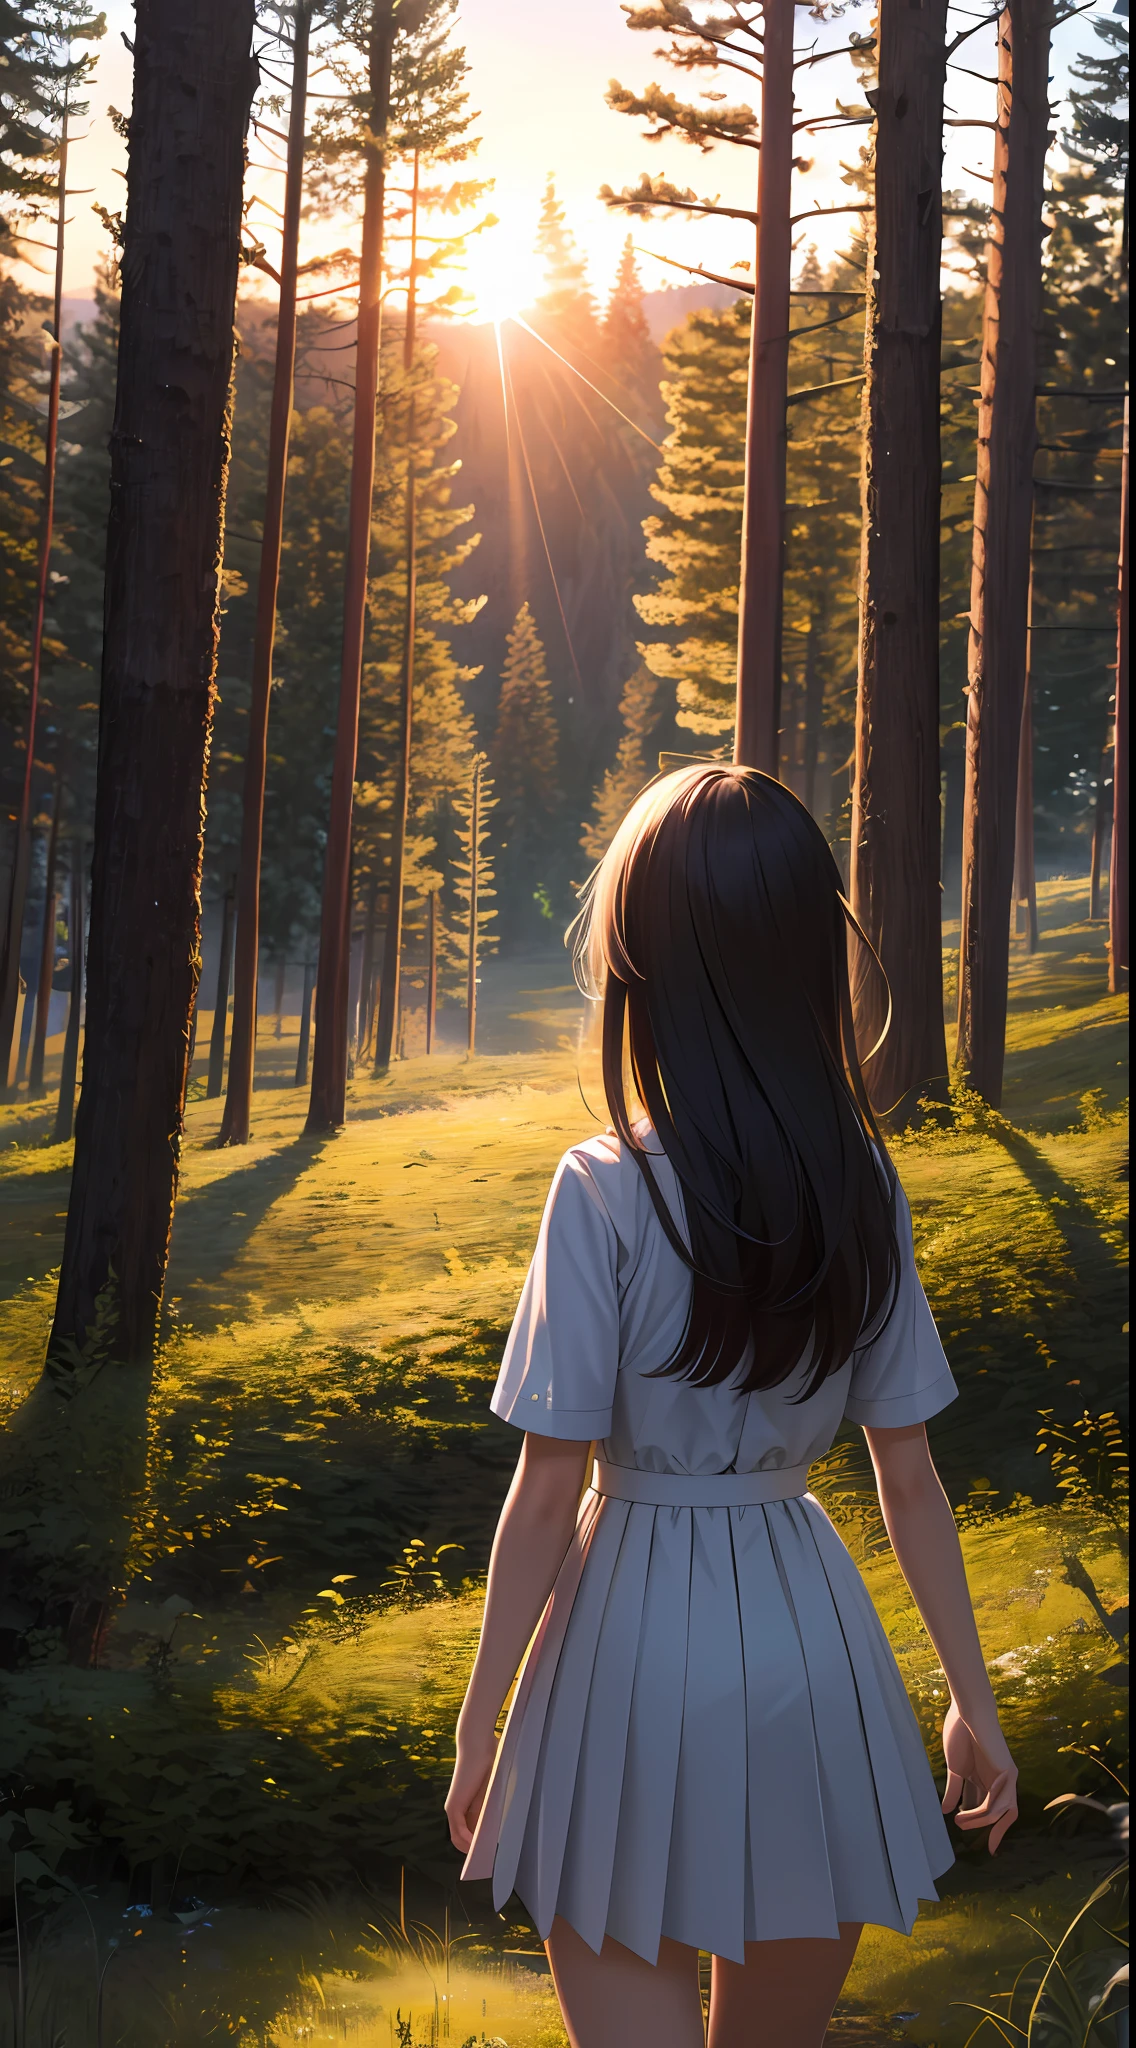 ((超詳細,超高解析度,詳細背景)),日出,森林,感人的,寒意,勵志的,1個女孩,背對著